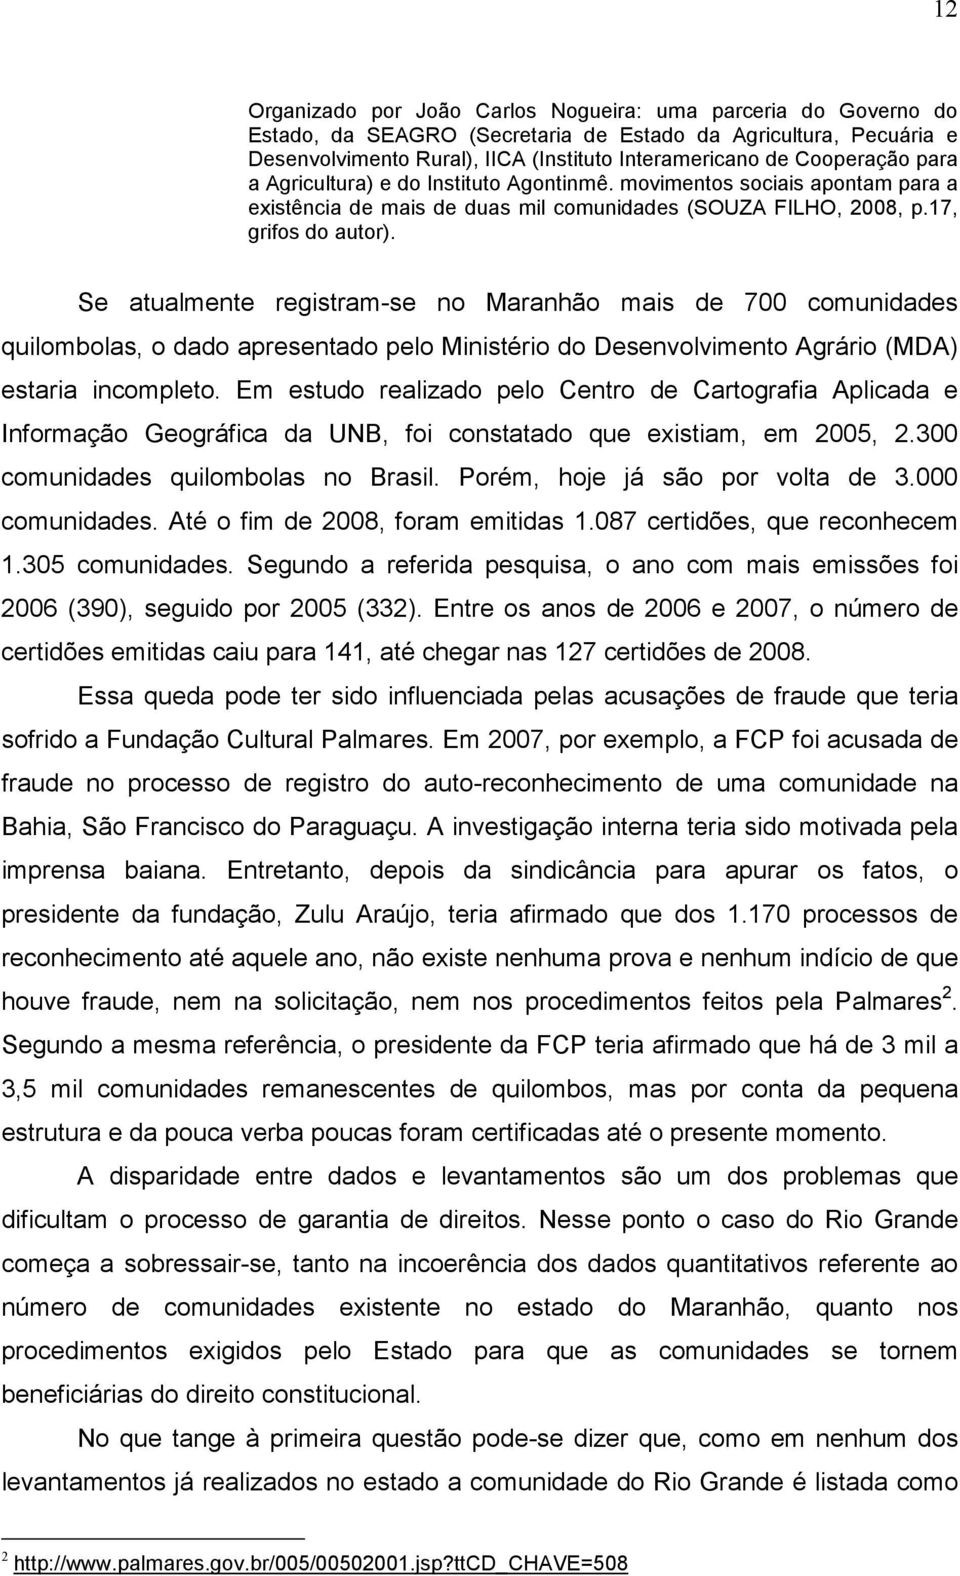 Se atualmente registram-se no Maranhão mais de 700 comunidades quilombolas, o dado apresentado pelo Ministério do Desenvolvimento Agrário (MDA) estaria incompleto.